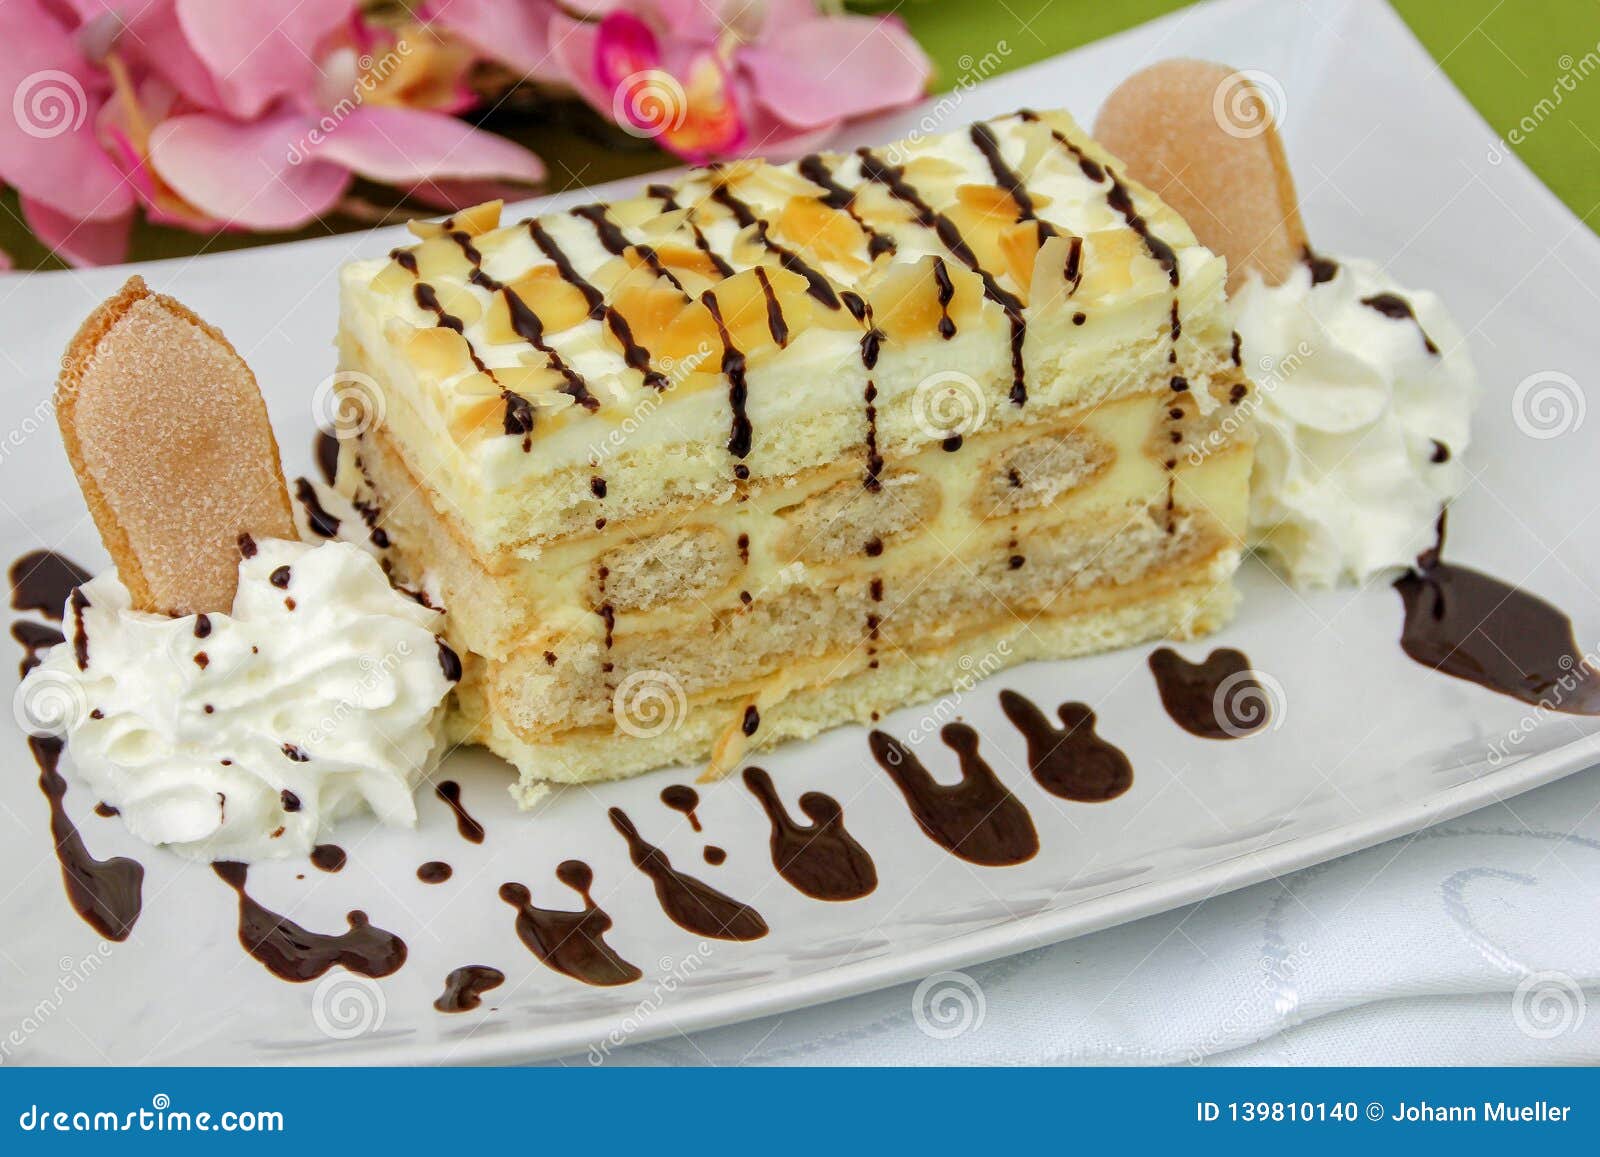 Malakoff Cake - Austrian Cake Stock Photo - Image of sponge, cream ...